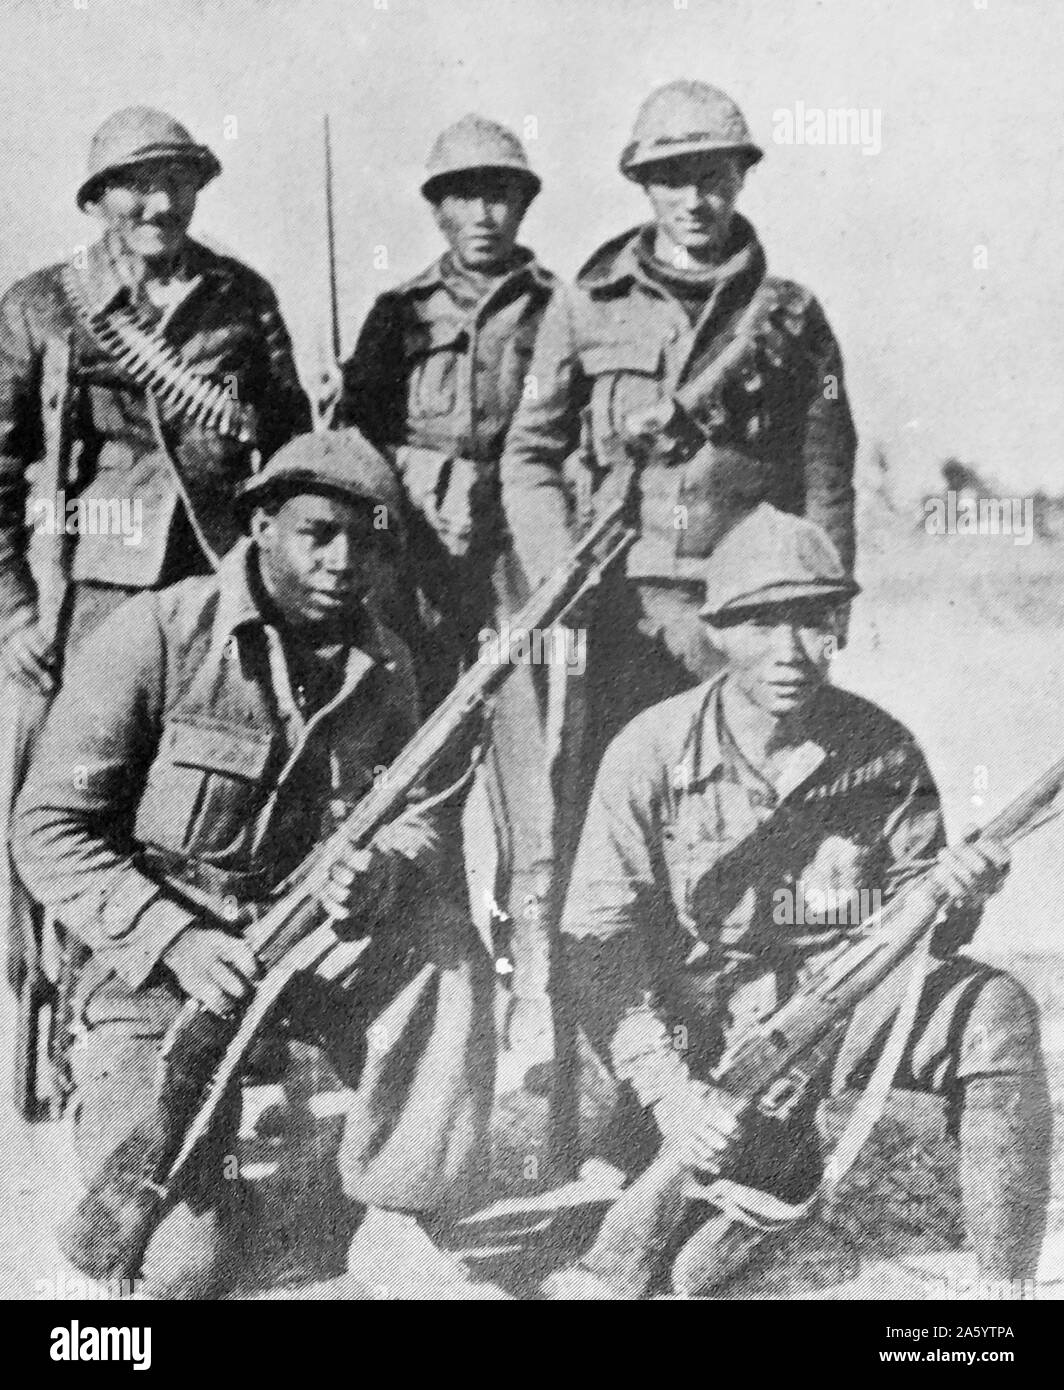 Freiwillige aus Amerika, Afrika, Asien und Europa in der internationalen Brigade, während des spanischen Bürgerkrieges Stockfoto